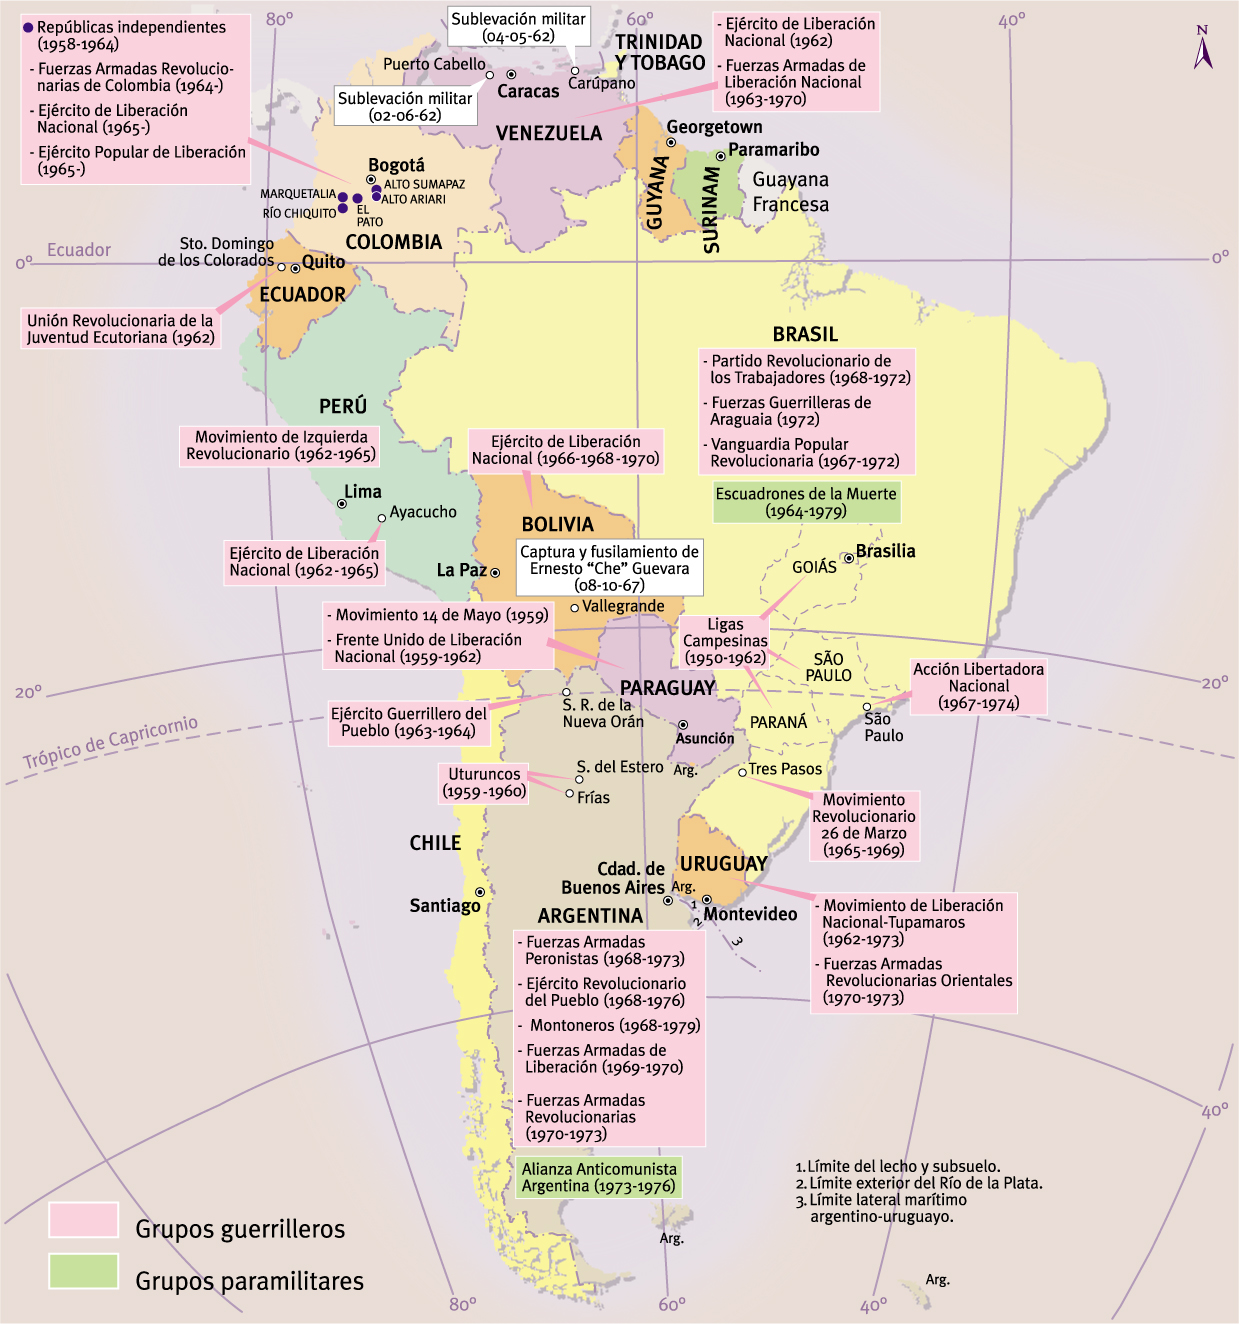 Insurgencia y contrainsurgencia en América del Sur: 1959-1973